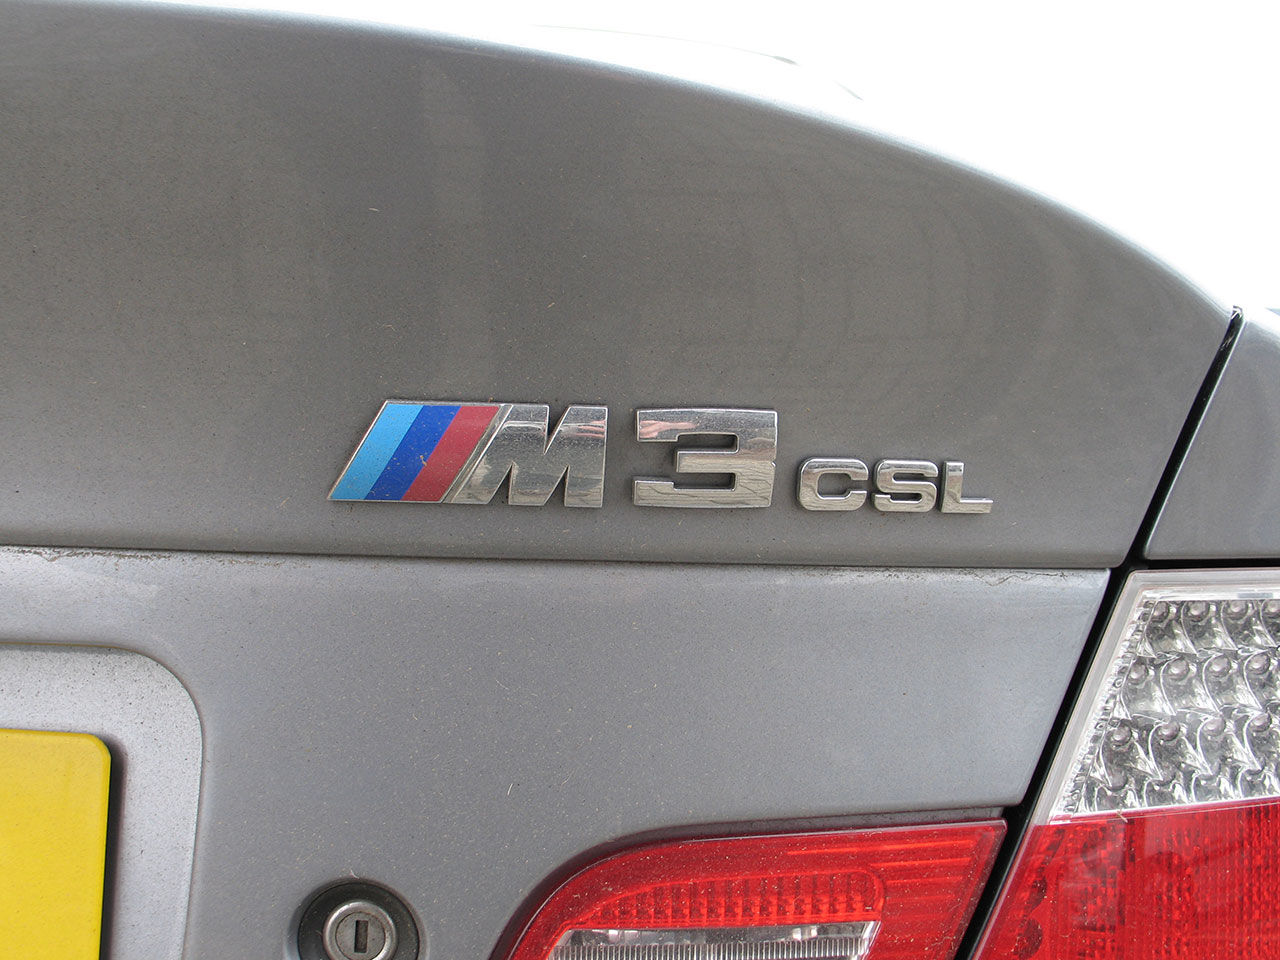 Nya CSL-versioner från BMW är på väg